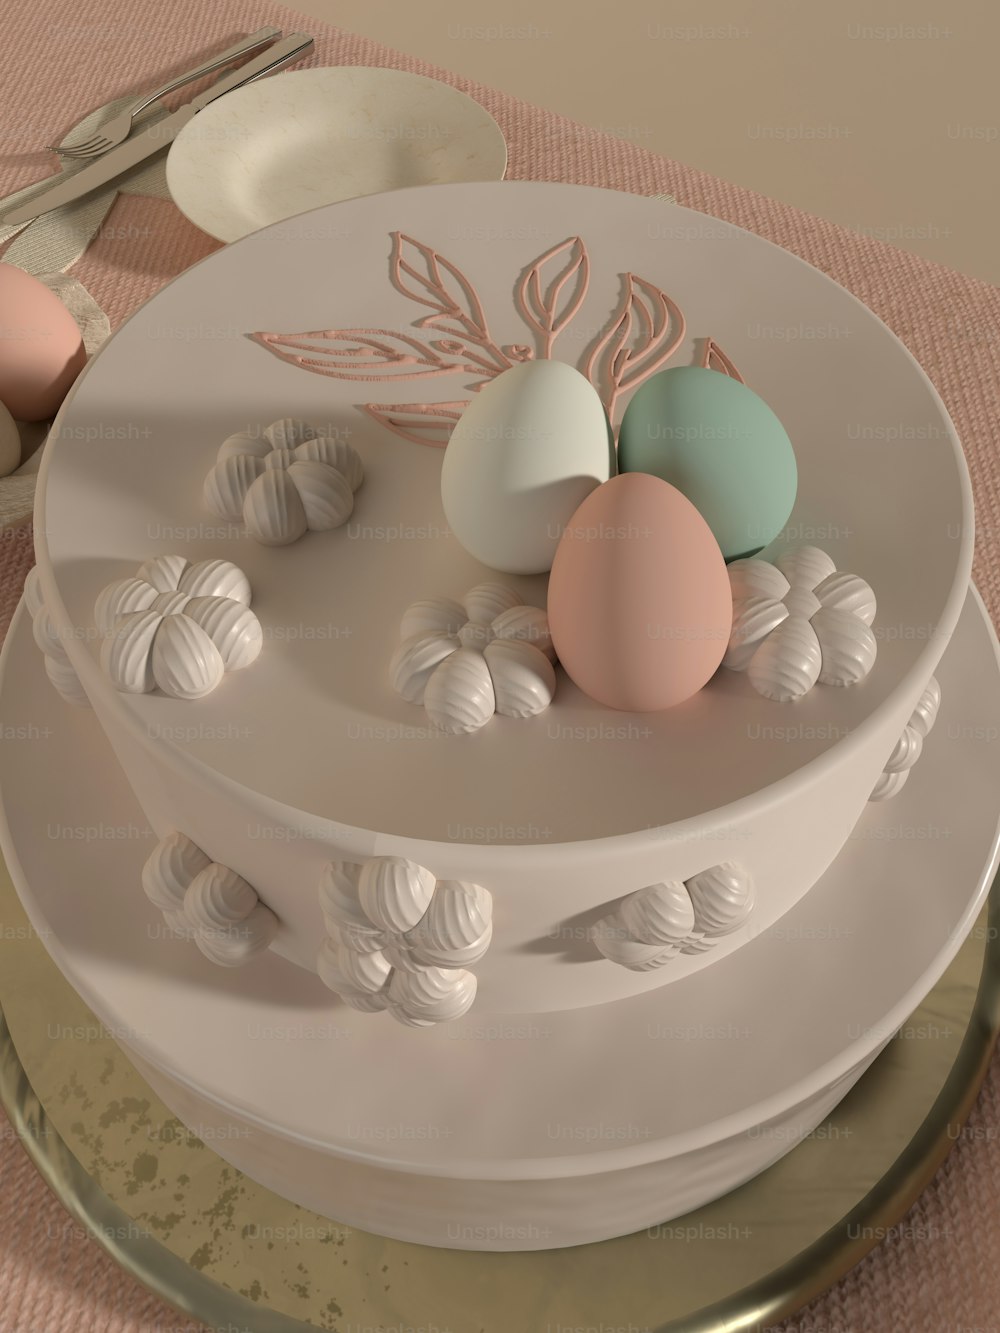 ein dreischichtiger Kuchen mit pastellfarbenen Eiern oben drauf